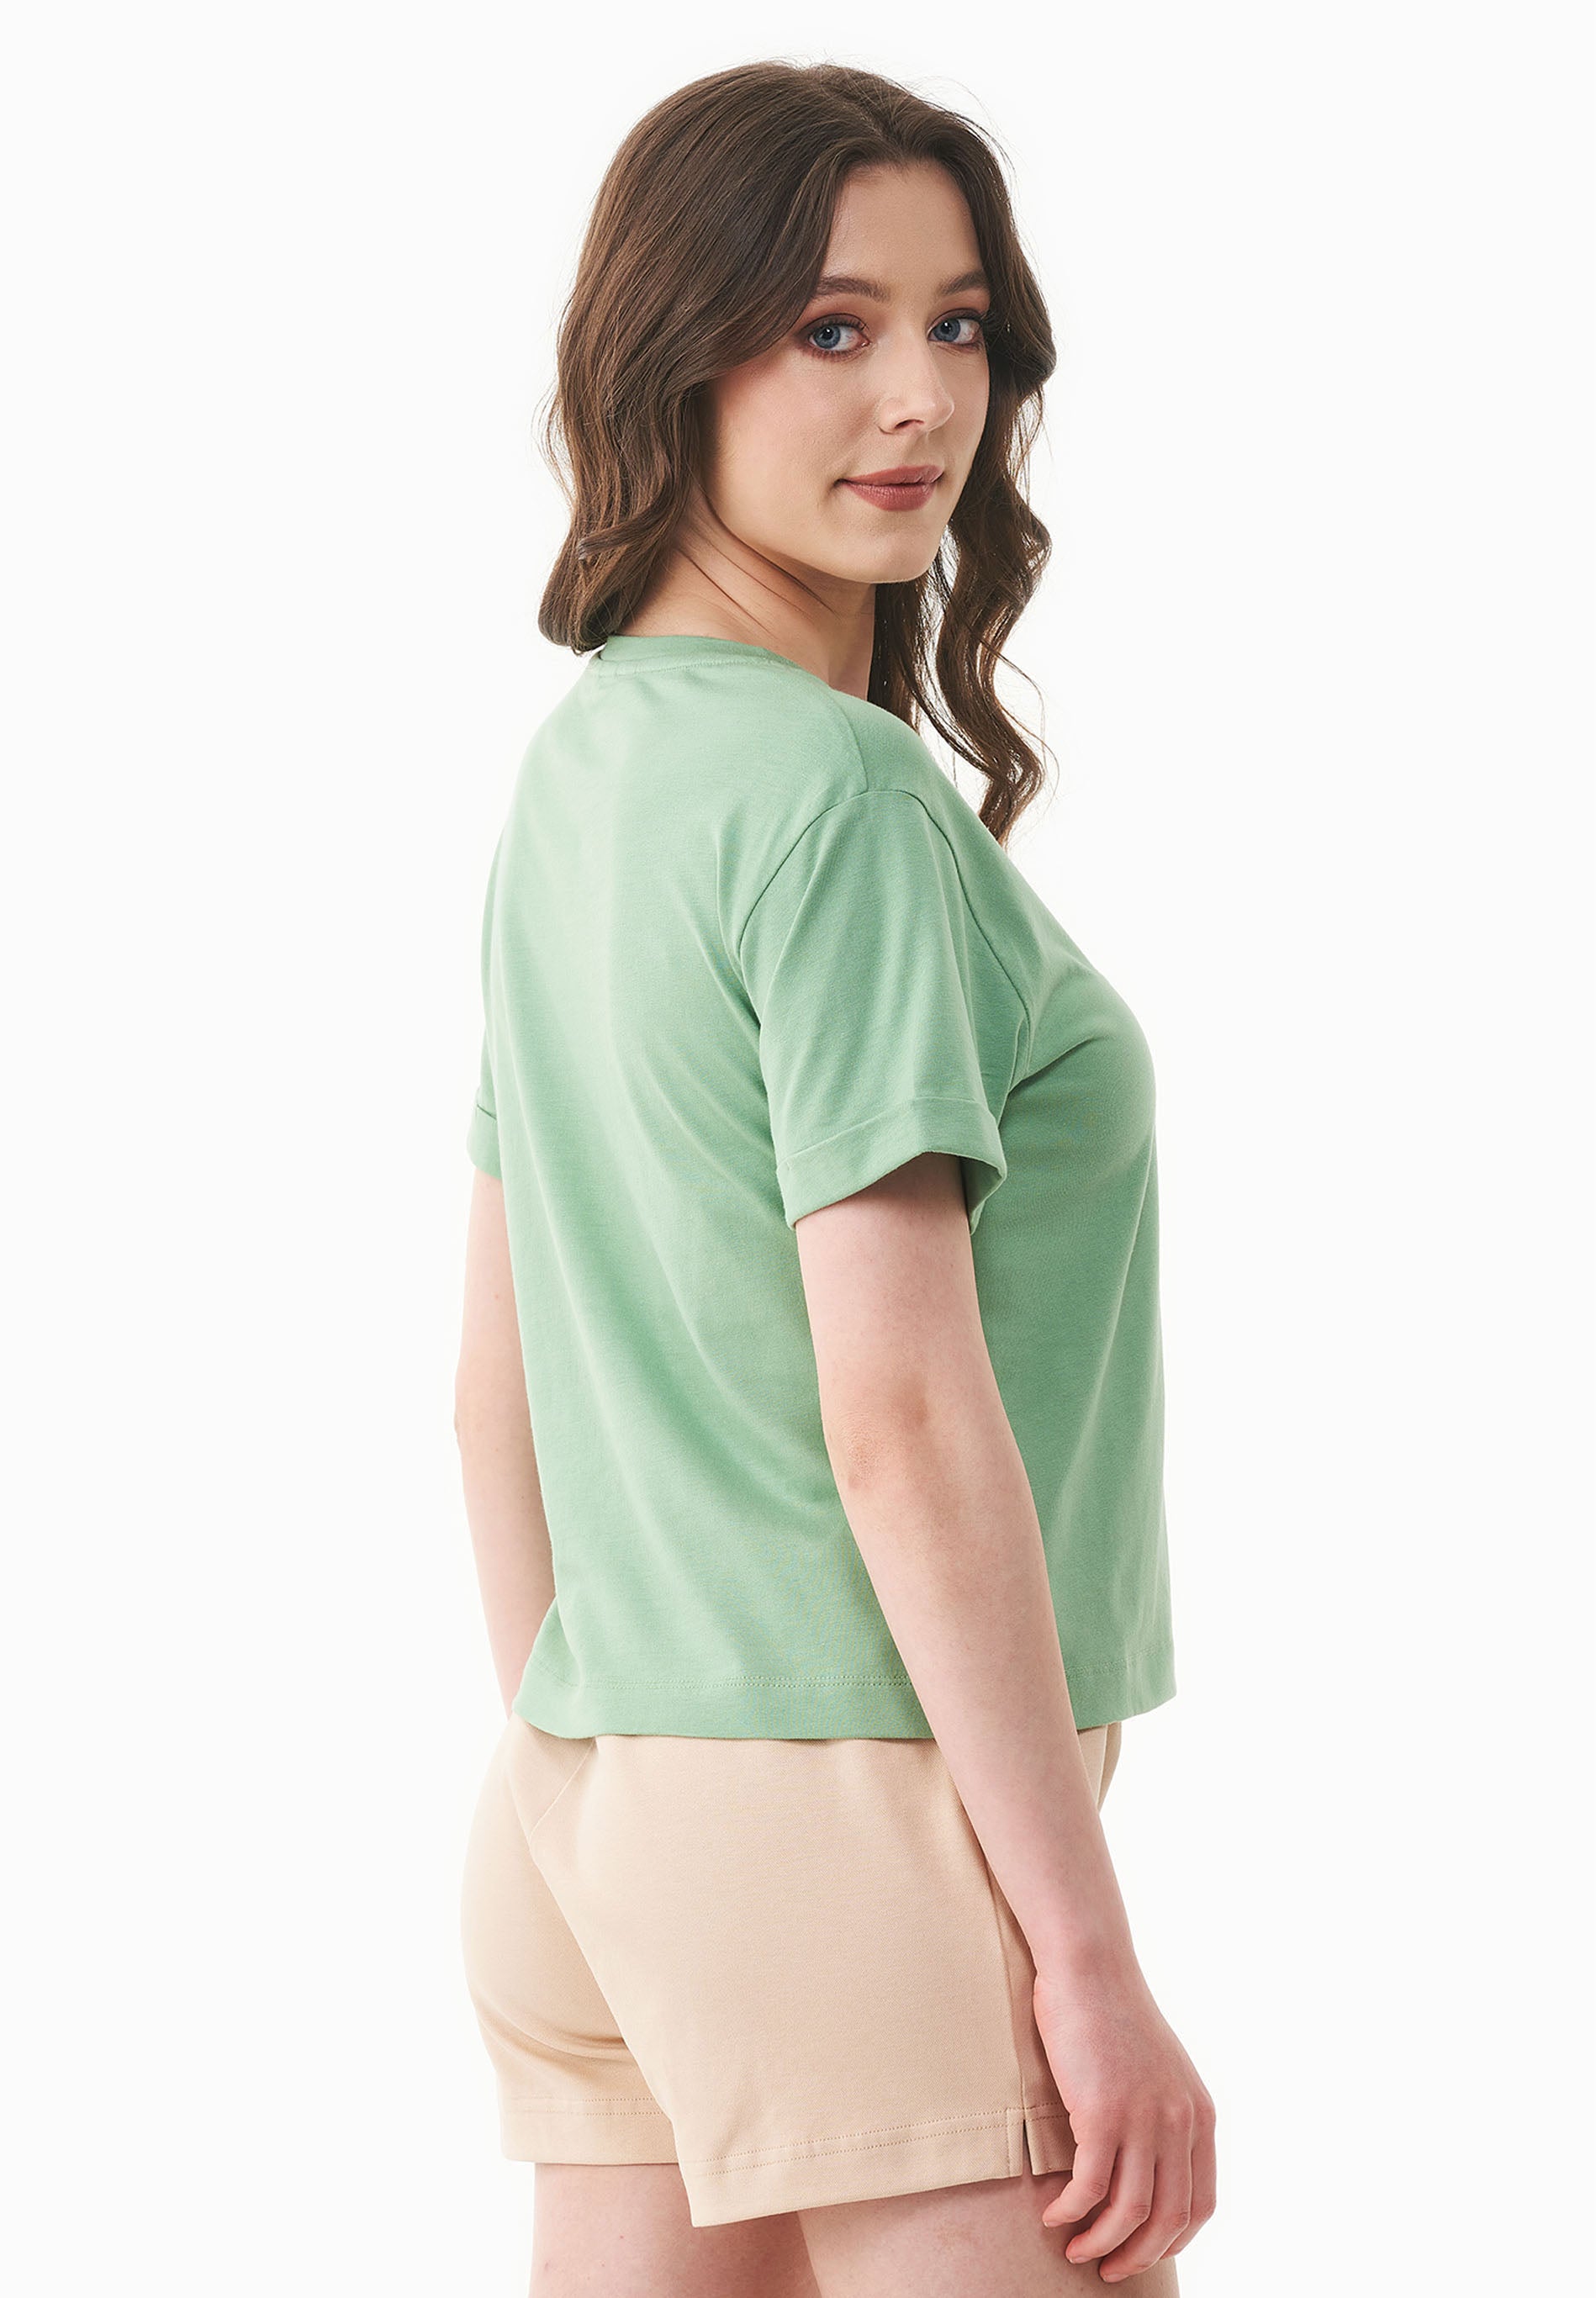 T-Shirt aus TENCEL™ Modal und Bio-Baumwolle